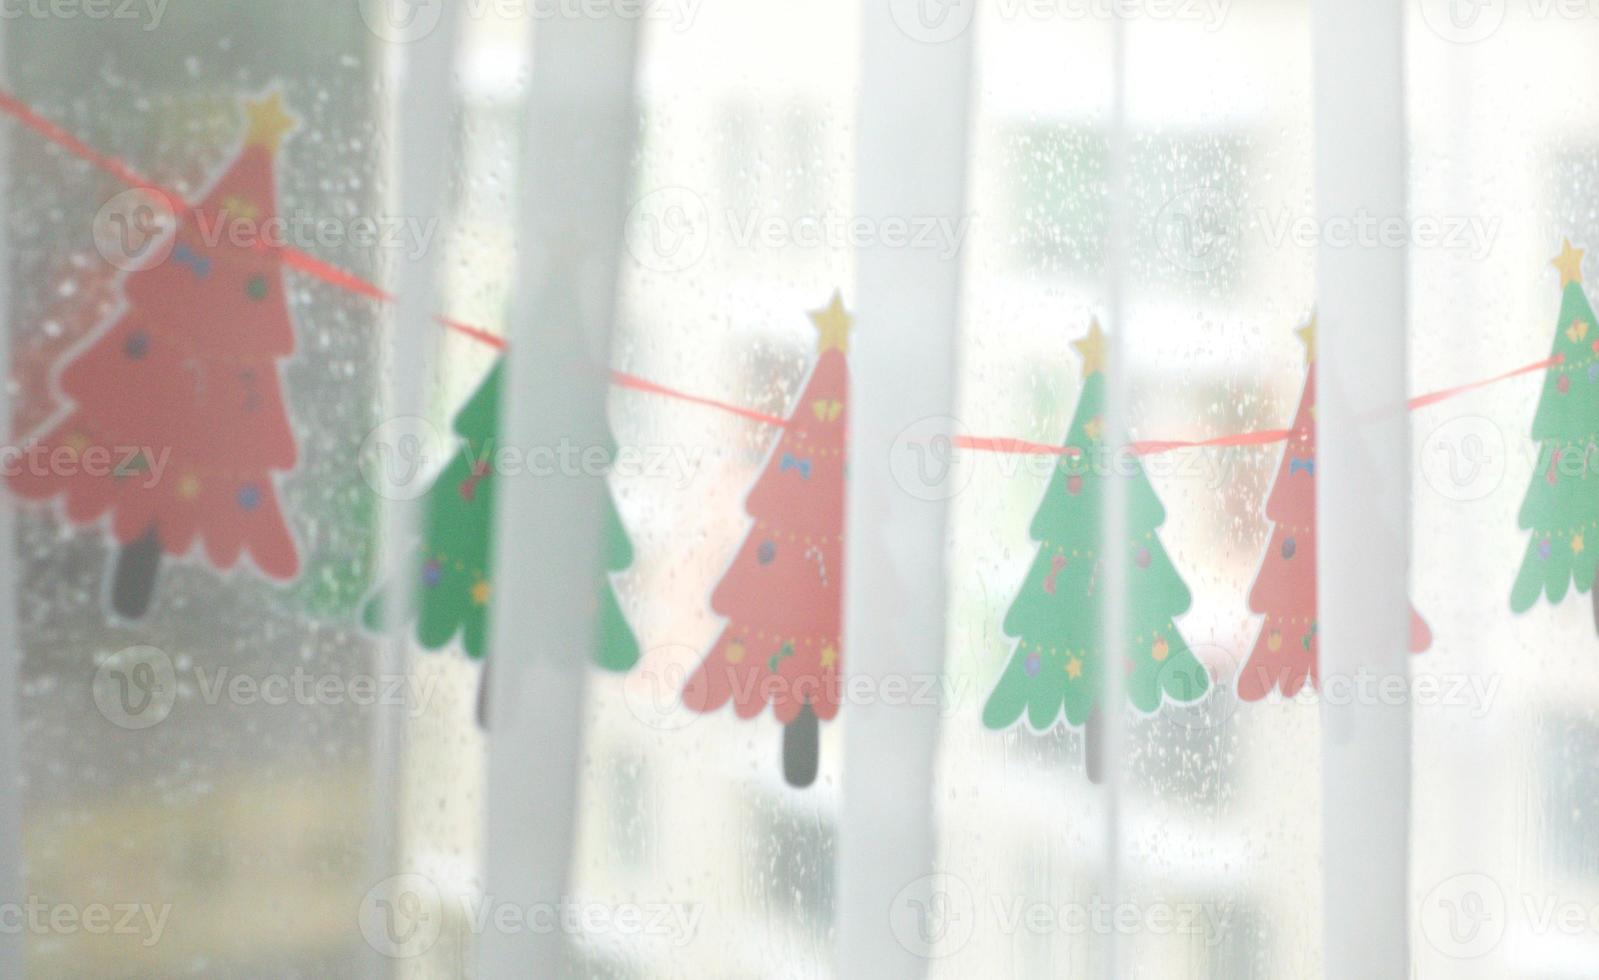 versierd venster met handgemaakt papier slinger van rood en groen Kerstmis bomen.feestelijk humeur. Kerstmis concept, vakantie voorbereiding.blij nieuw jaar.selectief focus foto